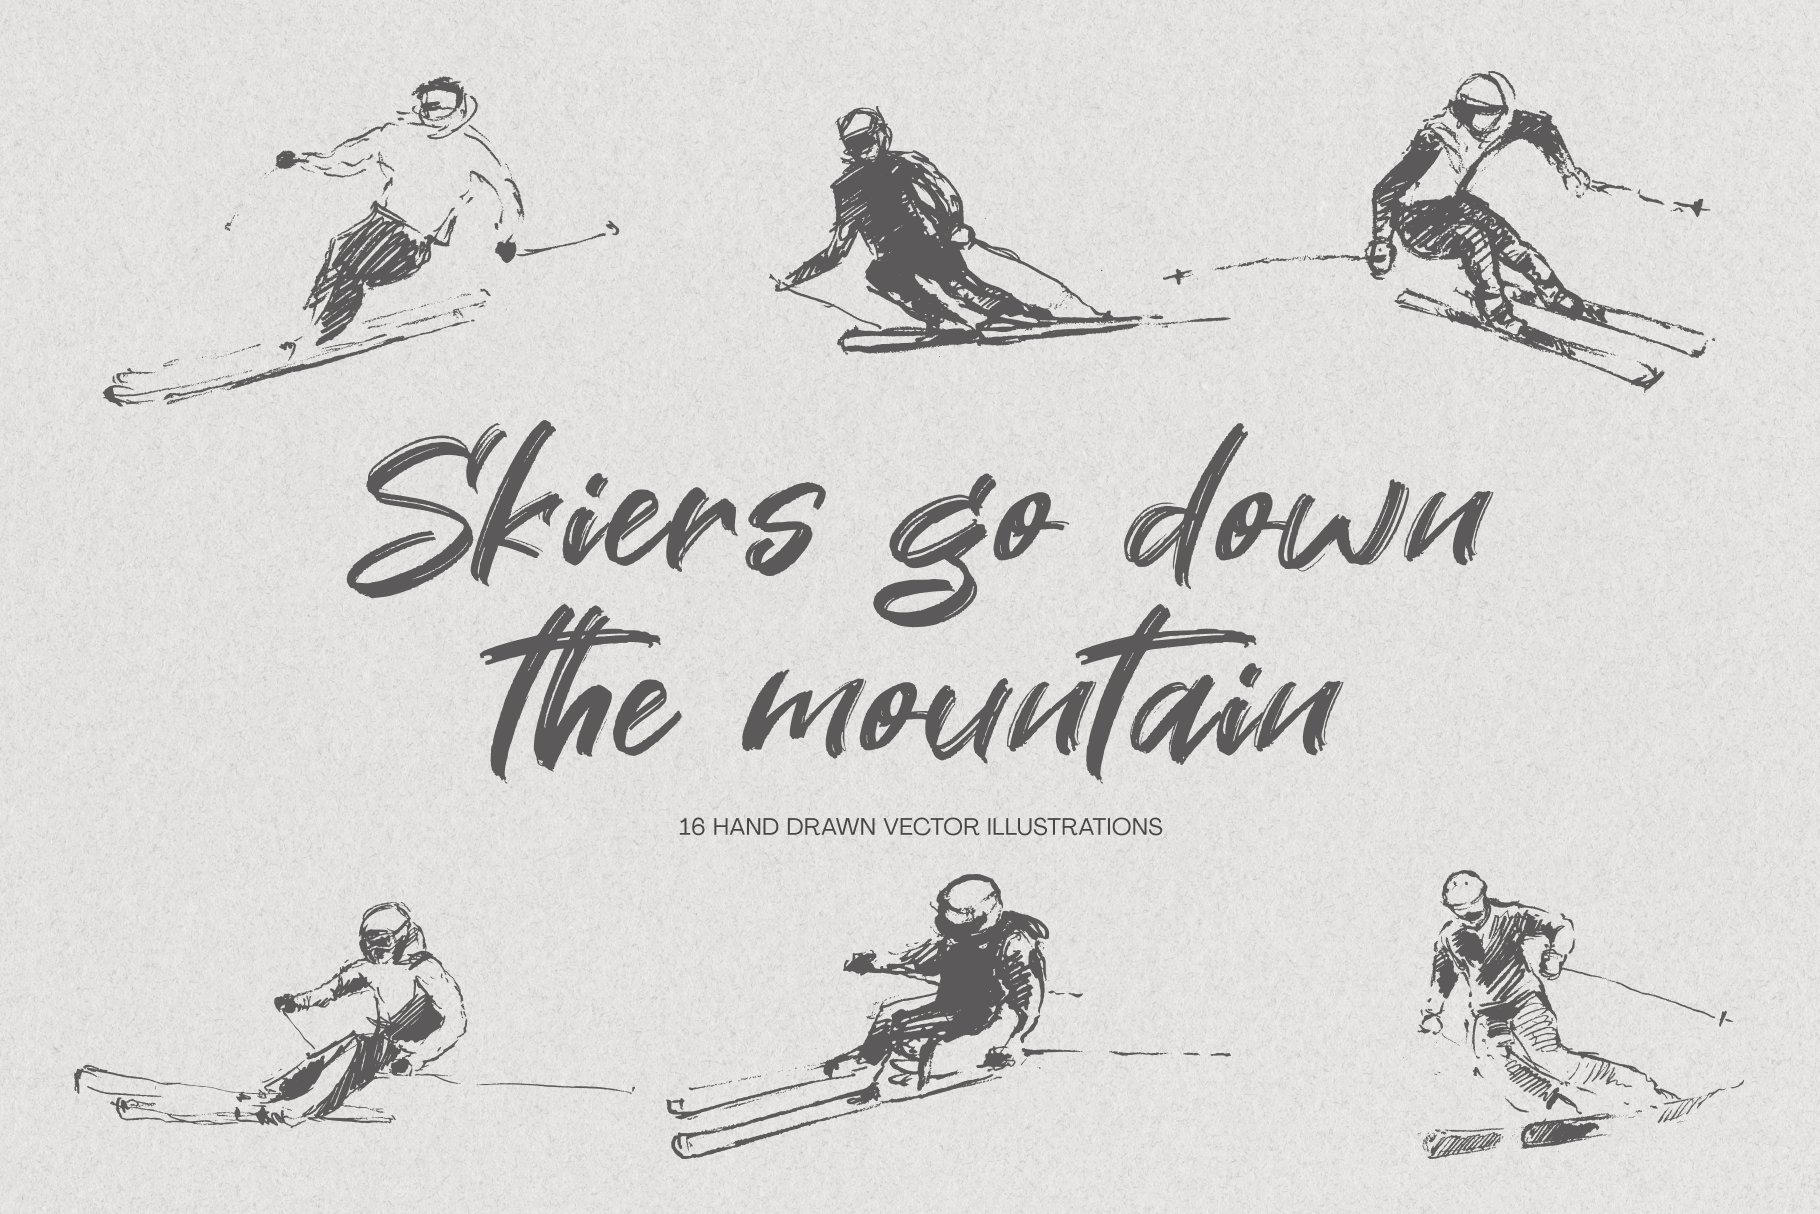 skiers01 02 .png 563